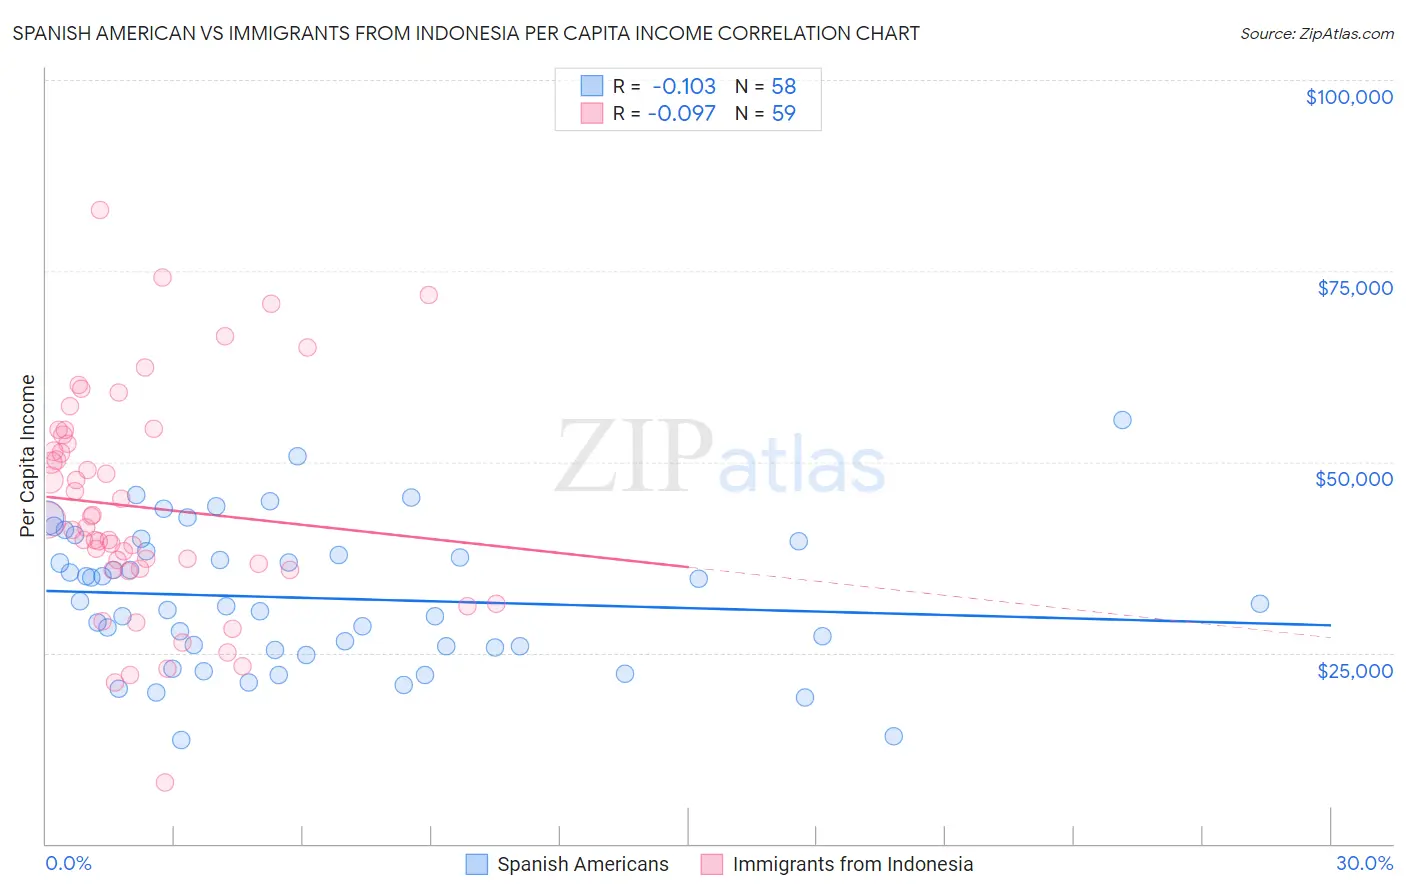 Spanish American vs Immigrants from Indonesia Per Capita Income